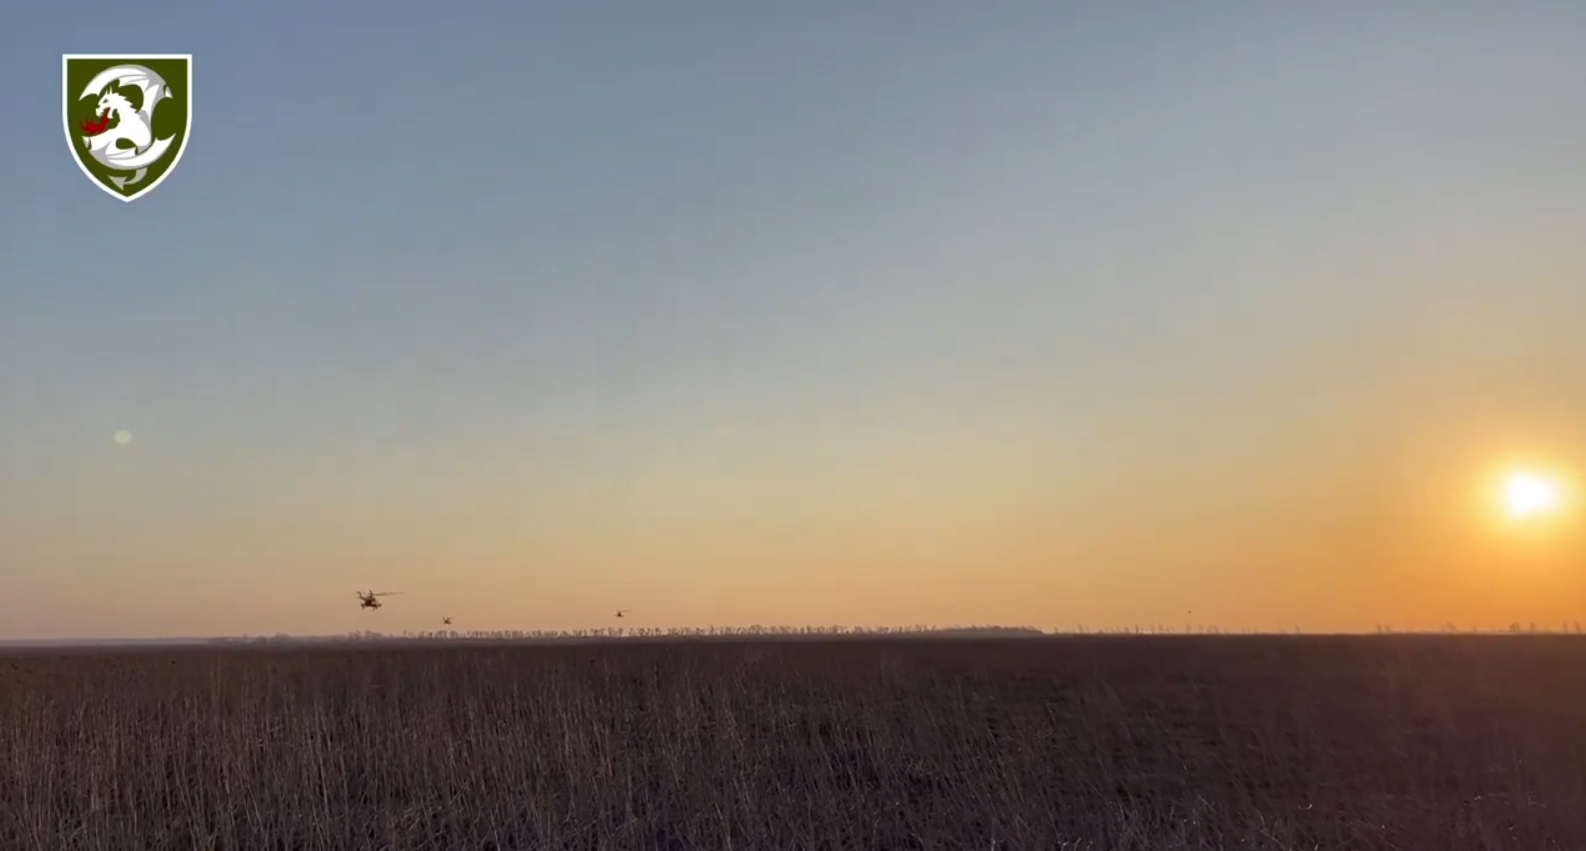 Українські авіатори передали привіт із неба сонячного бойового дня: відео, що надихає